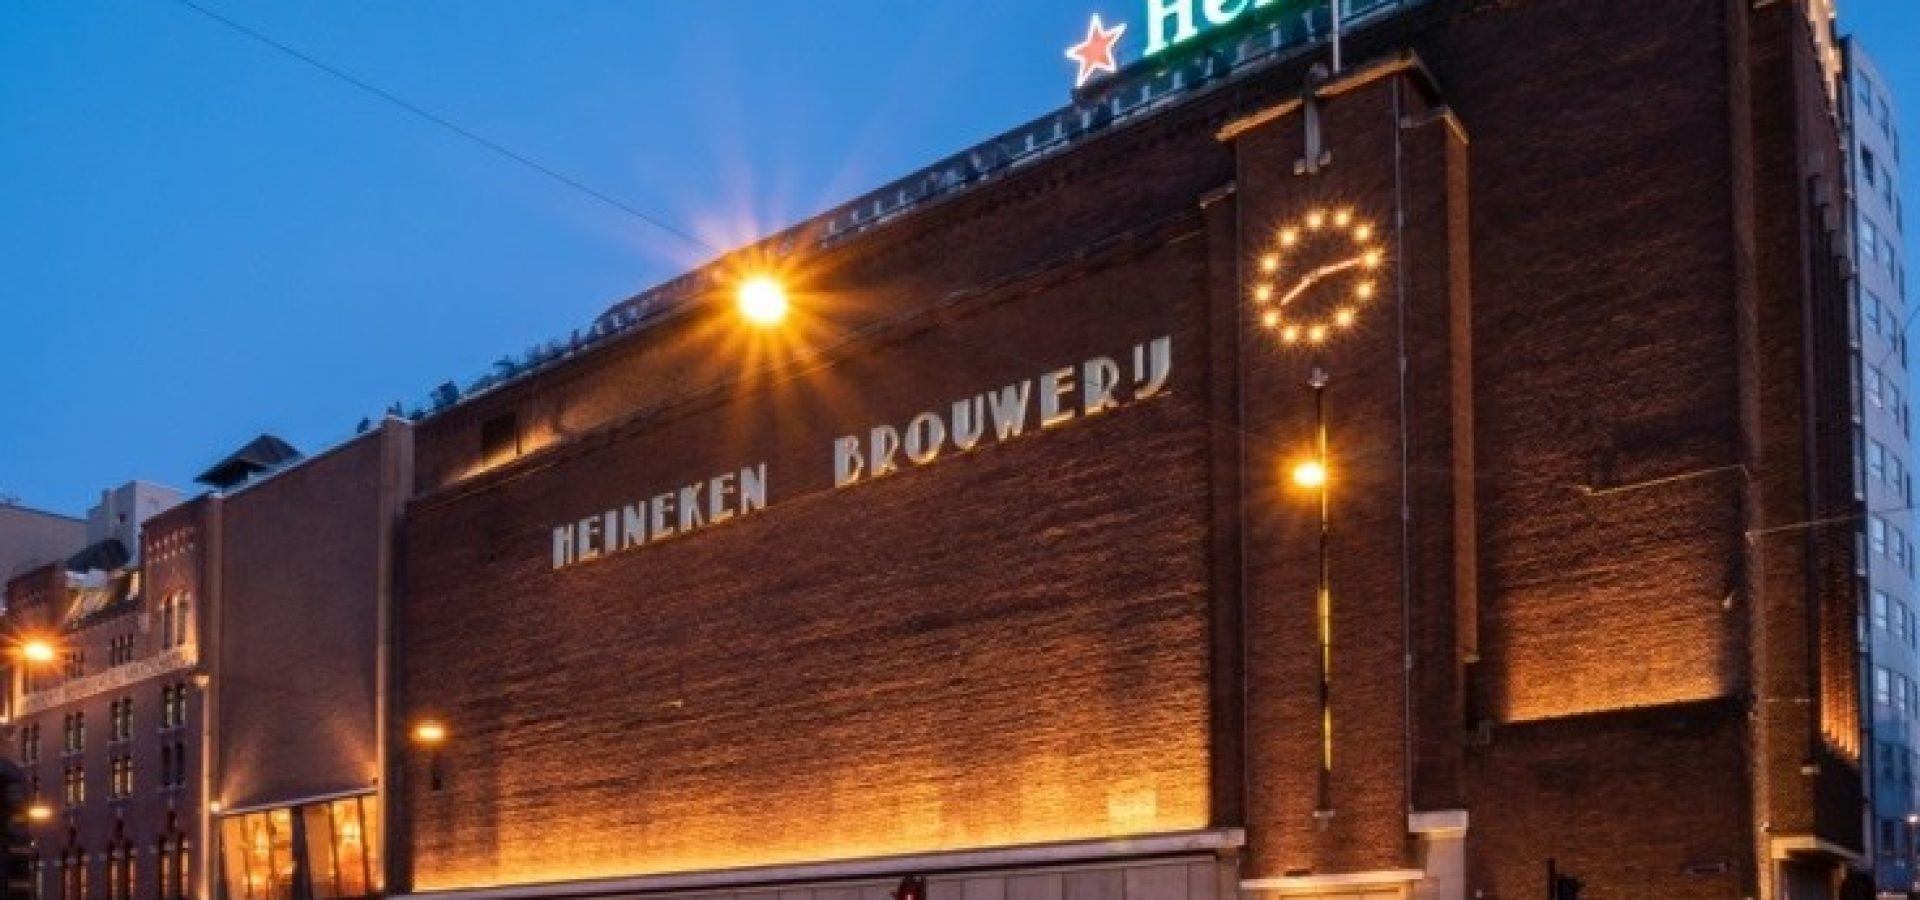 Wibest – Heineken brewery building as seen from outside